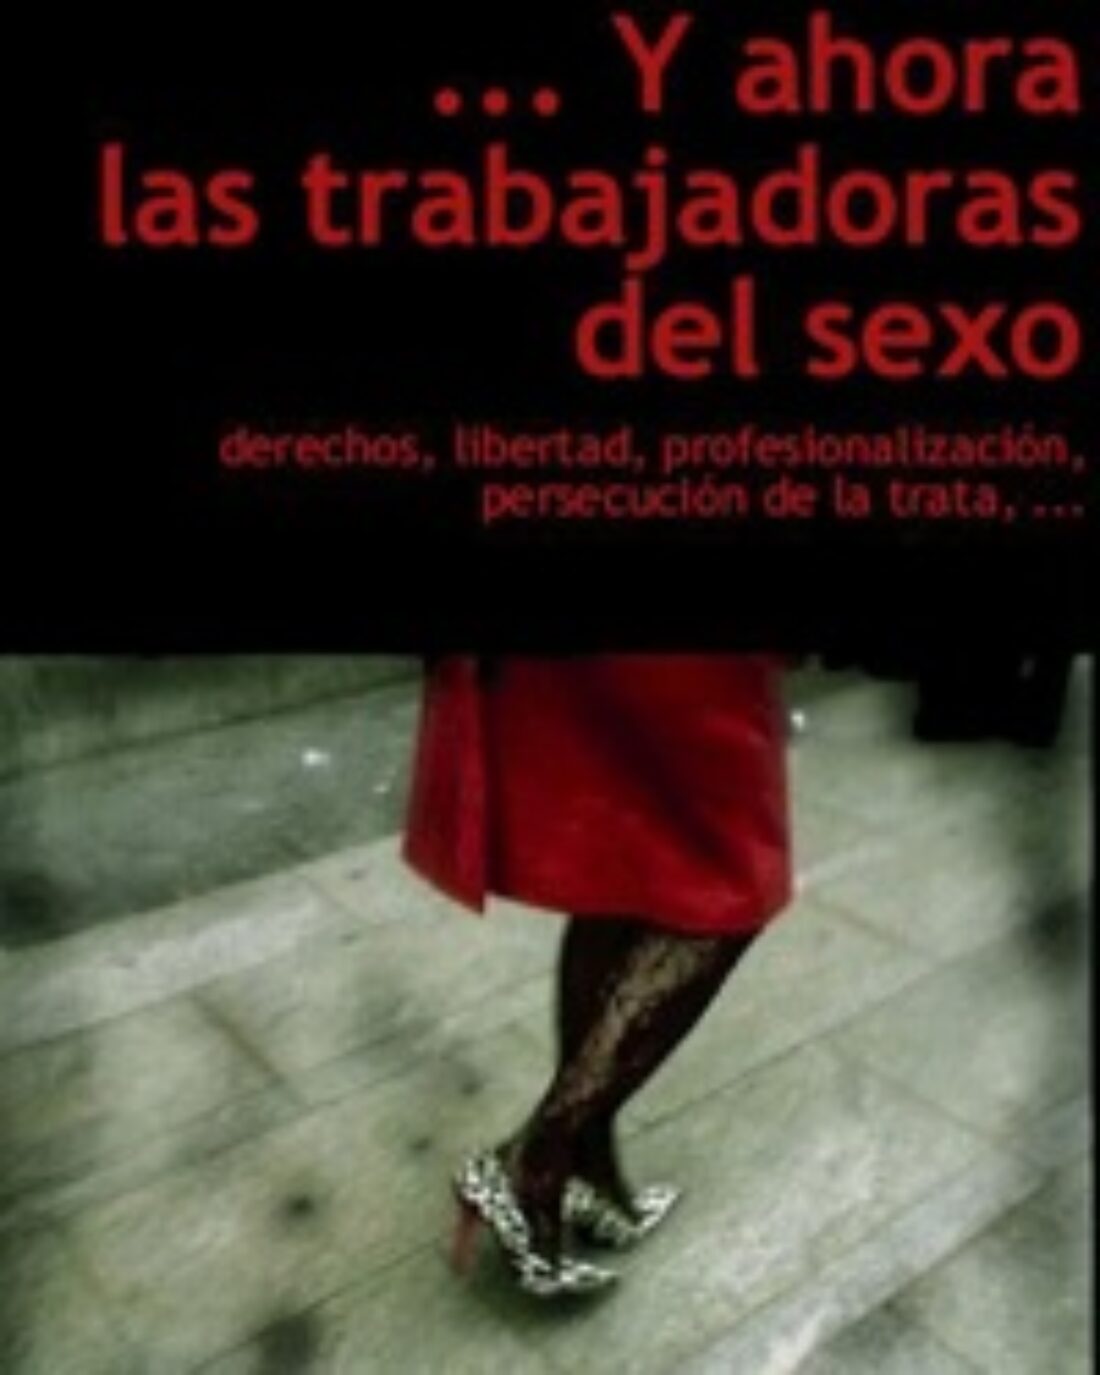 30-31 octubre, Madrid : Jornadas …y ahora las trabajadoras del sexo (Colectivo Hetaira)